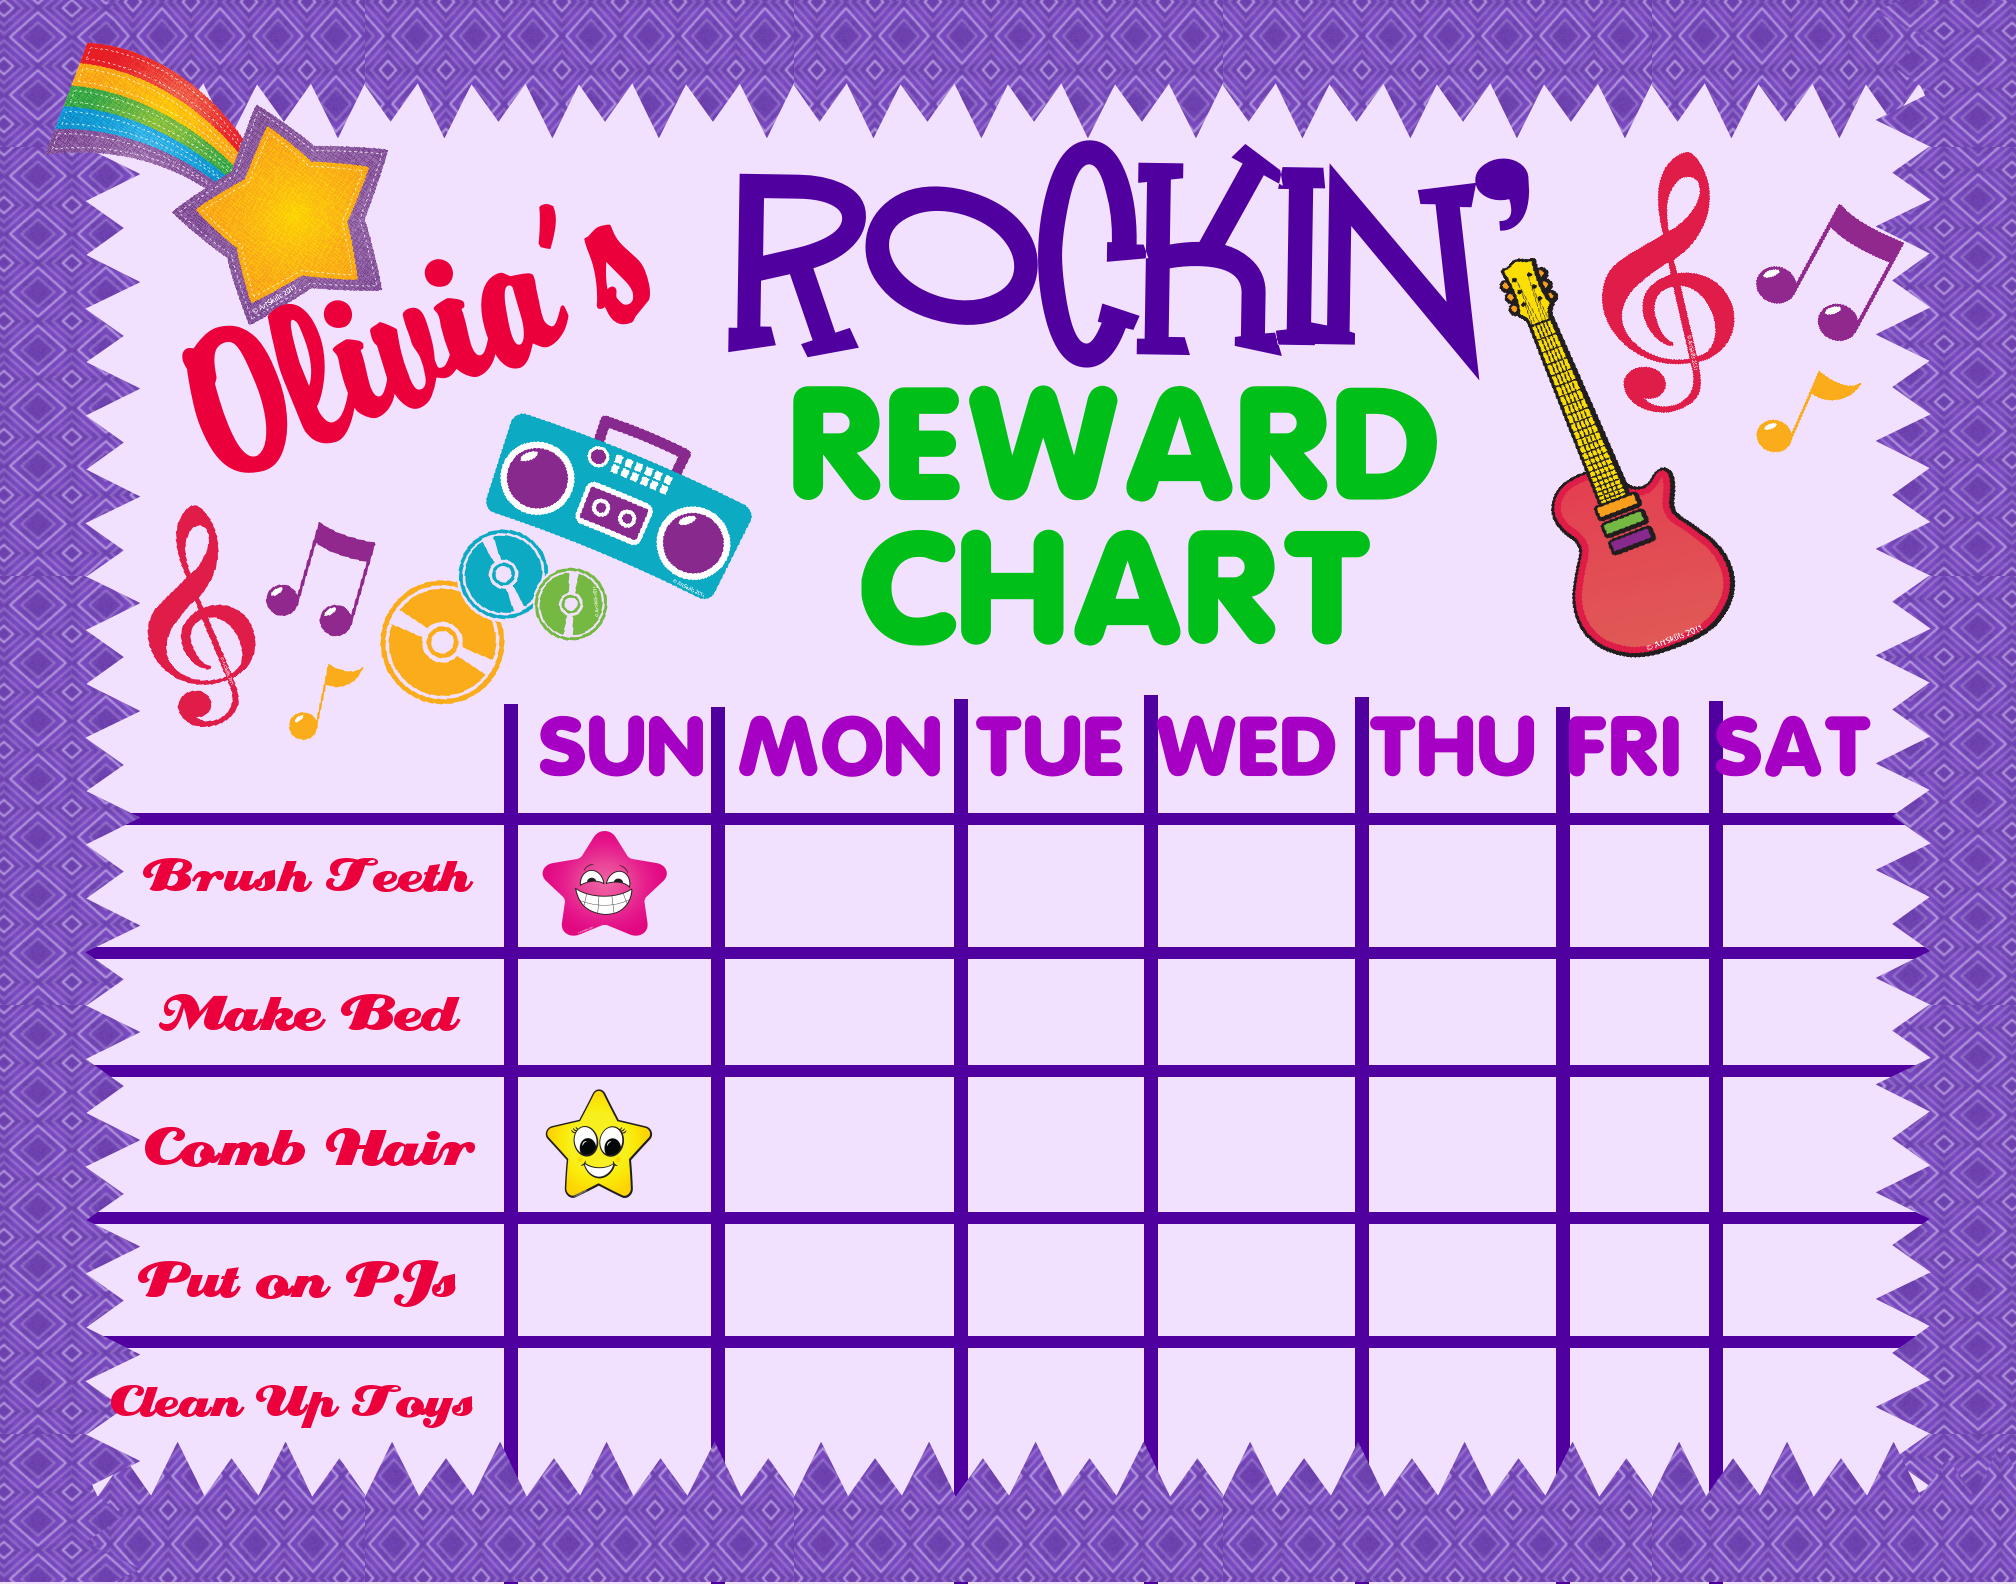 Rockin S Reward Chart